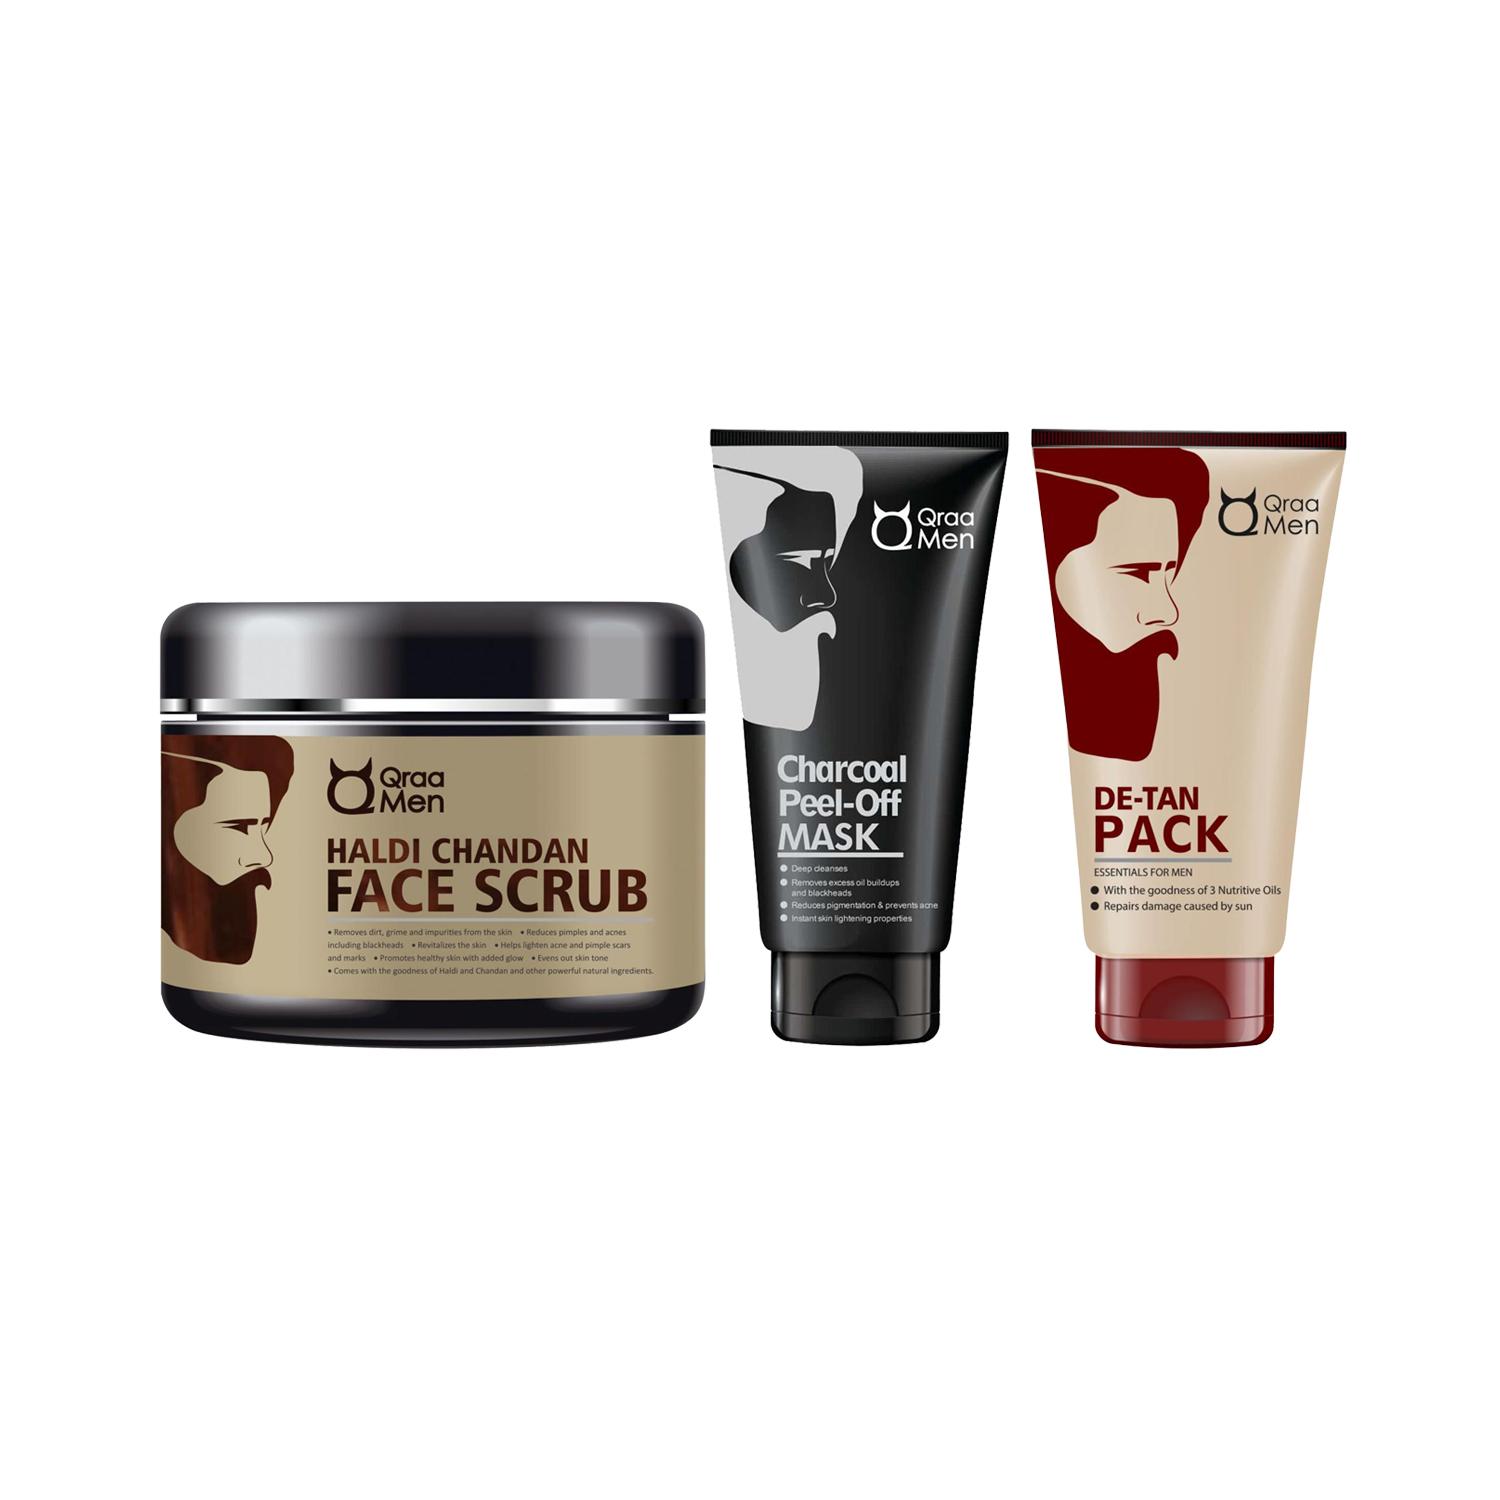 Qraamen | Qraamen De-Tan Face Pack, Haldi Chandan Face Scrub & Charcoal Peel Off Mask Combo